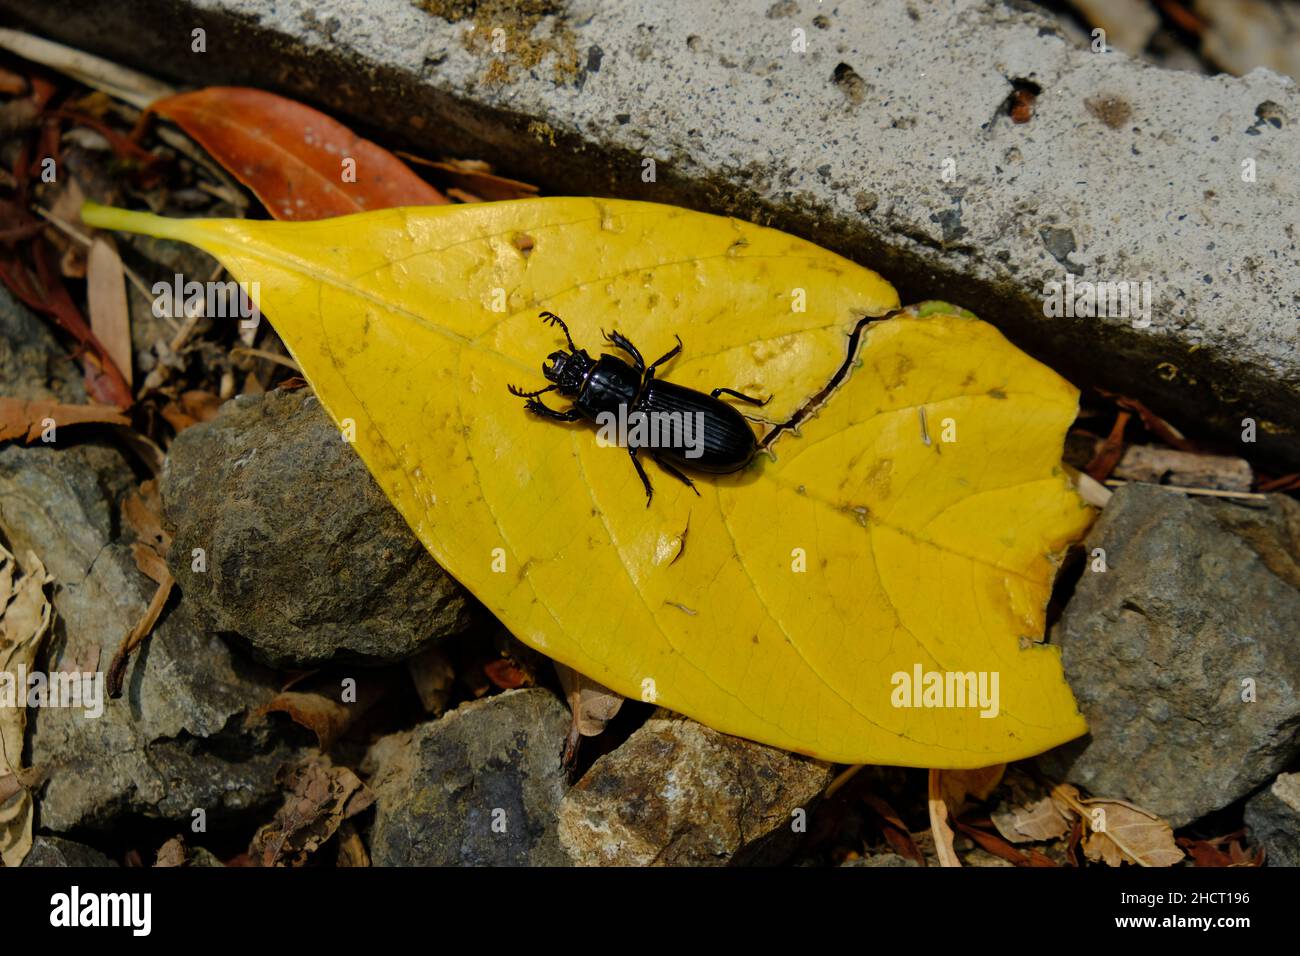 Costa Rica Parque Nacional Rincón de la Vieja - Beetle Negro en hoja amarilla Foto de stock